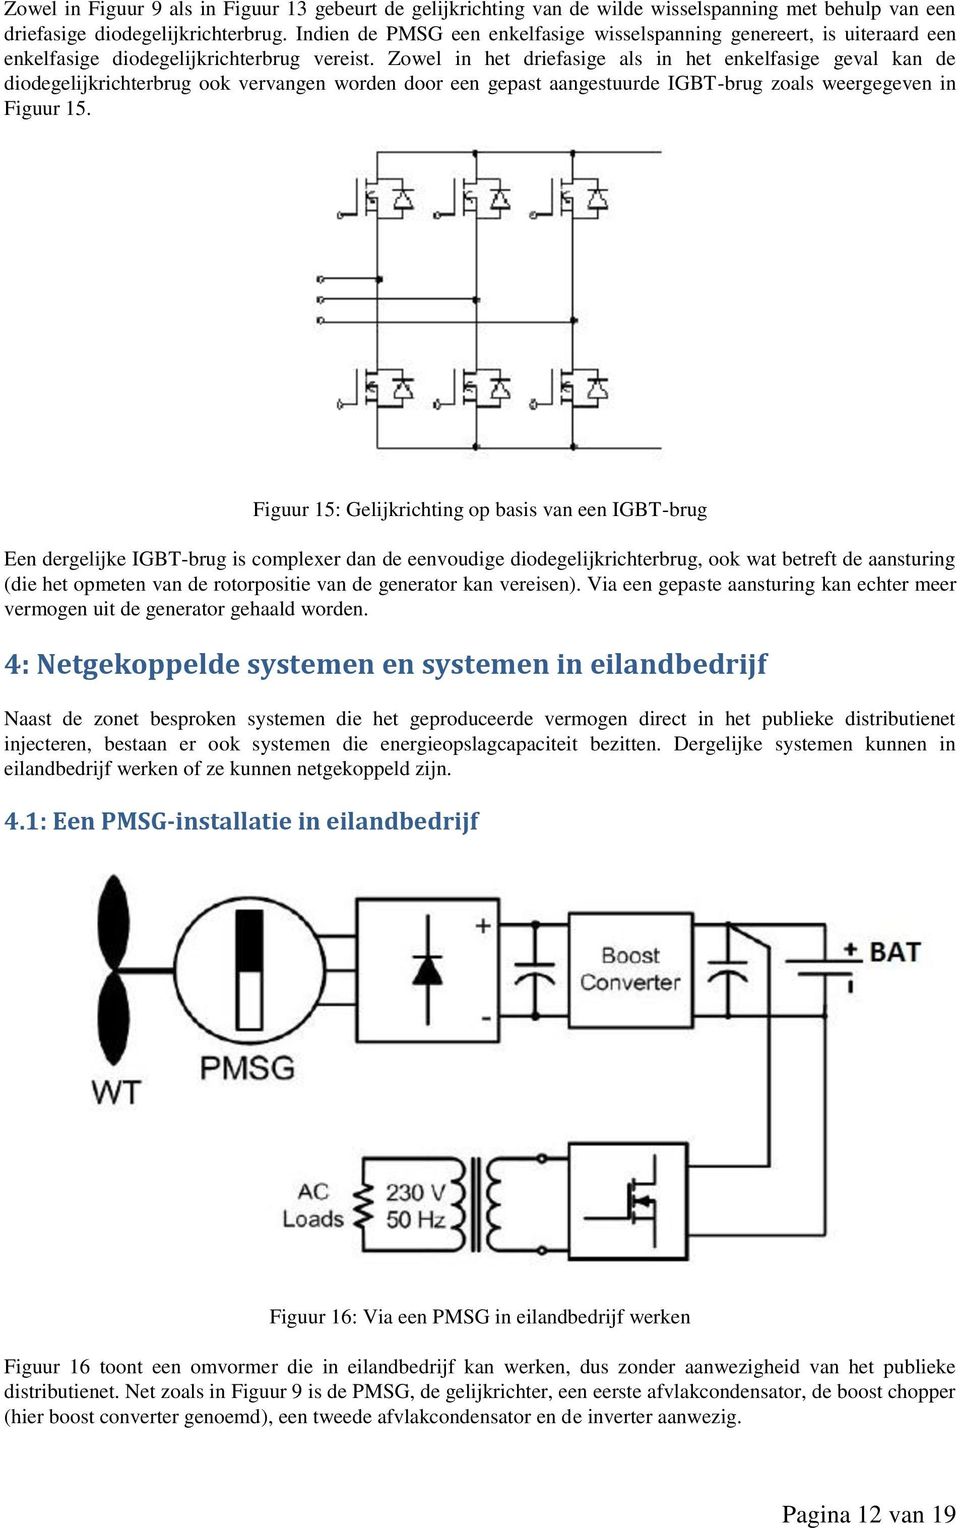 Zowel in het driefasige als in het enkelfasige geval kan de diodegelijkrichterbrug ook vervangen worden door een gepast aangestuurde IGBT-brug zoals weergegeven in Figuur 15.